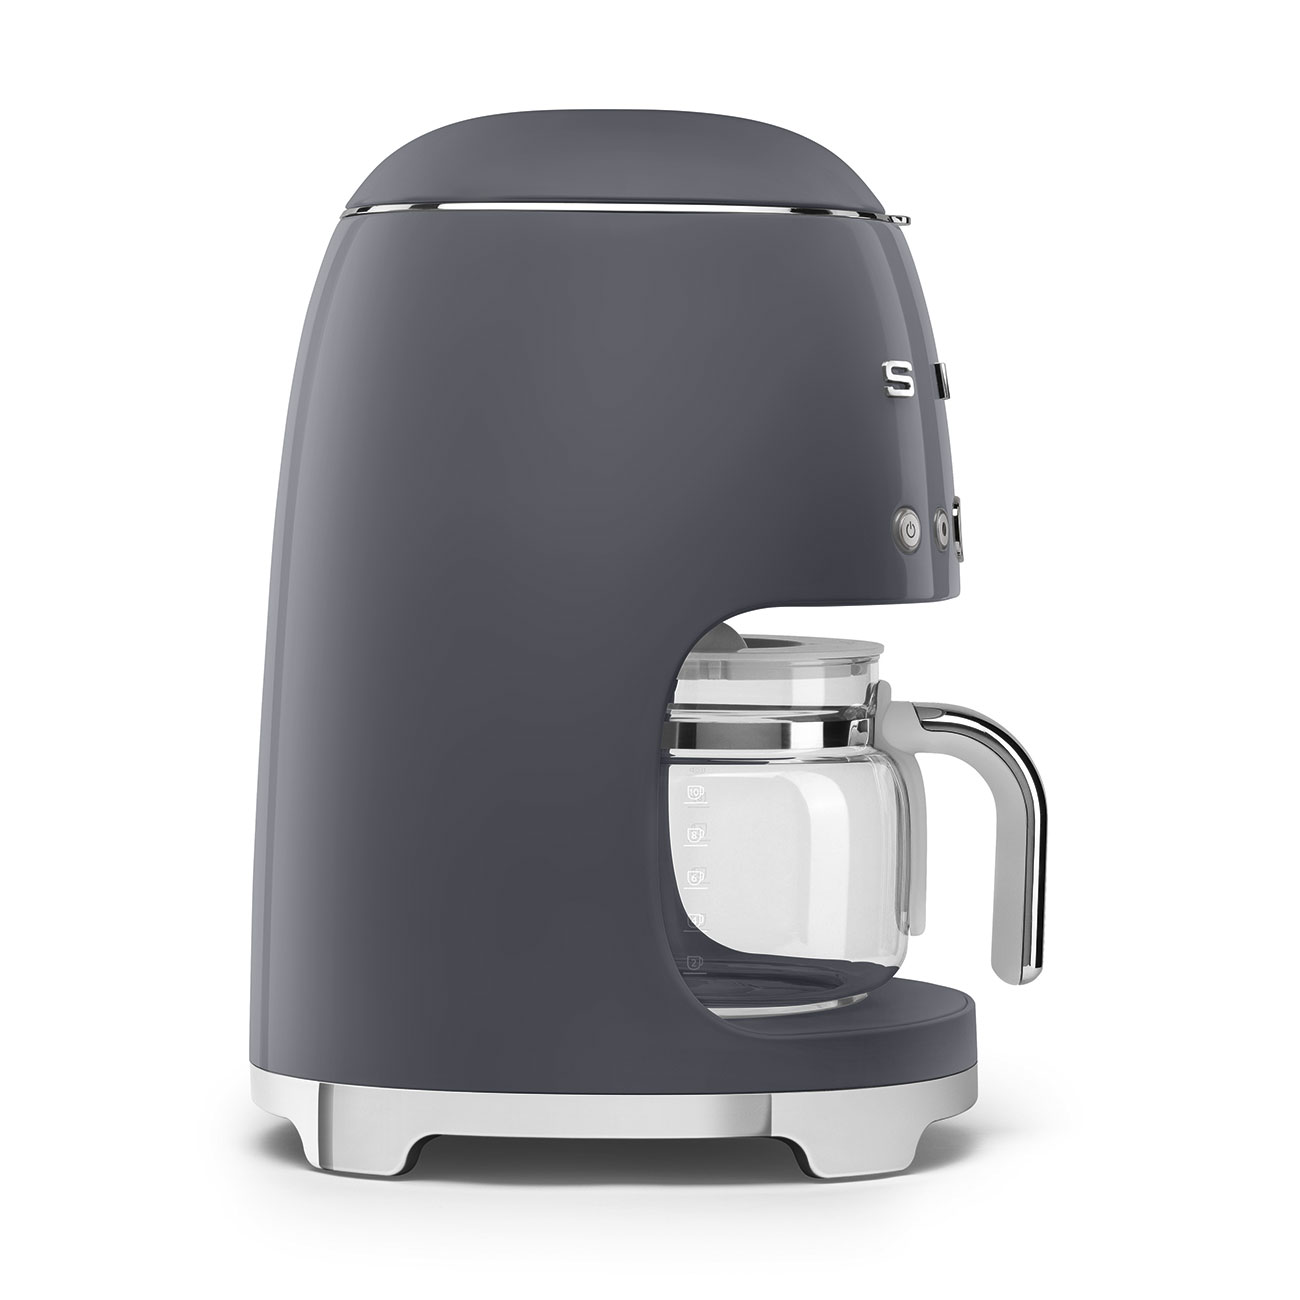 Smeg Retro Drip Coffee Machine and 2-Slice Toaster Bundle (Gray)